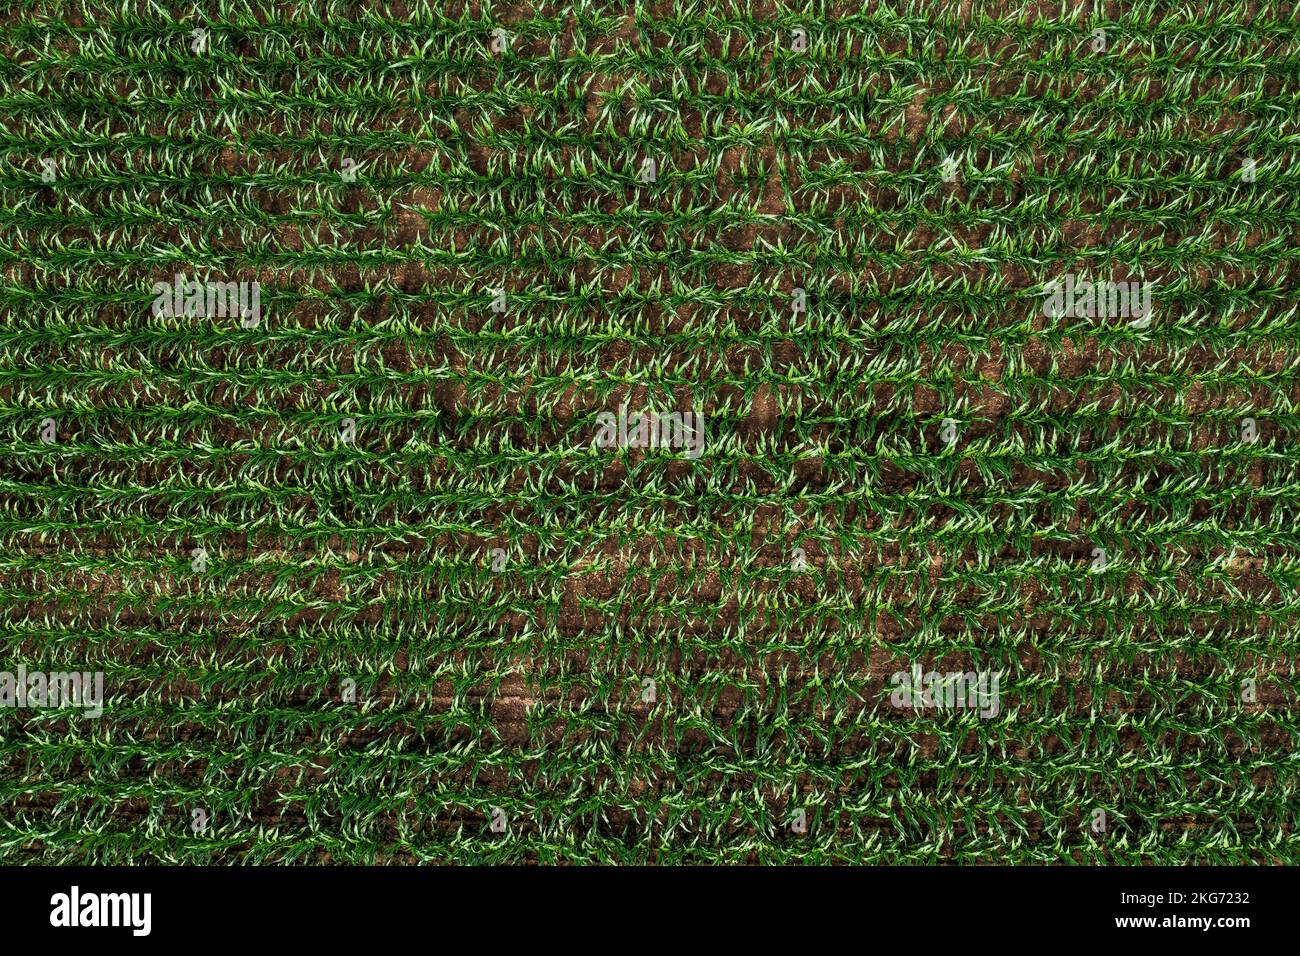 Vista dall'alto delle piante verdi di mais in campo agricolo coltivato, drone pov shot di piante di mais in primavera come sfondo naturale astratto Foto Stock